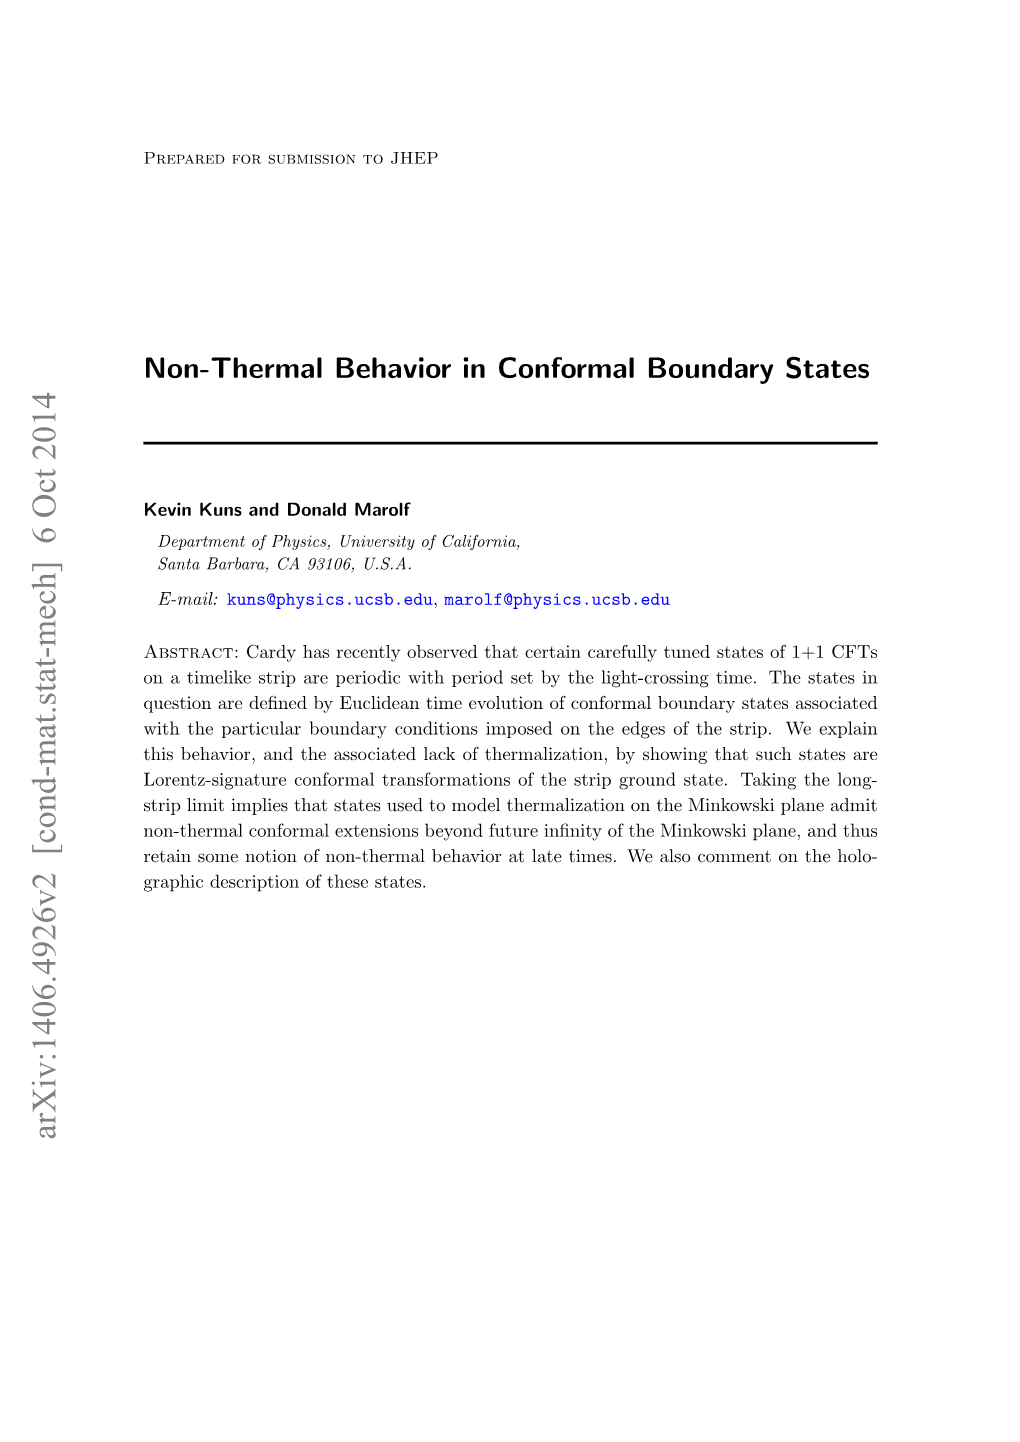 Non-Thermal Behavior in Conformal Boundary States